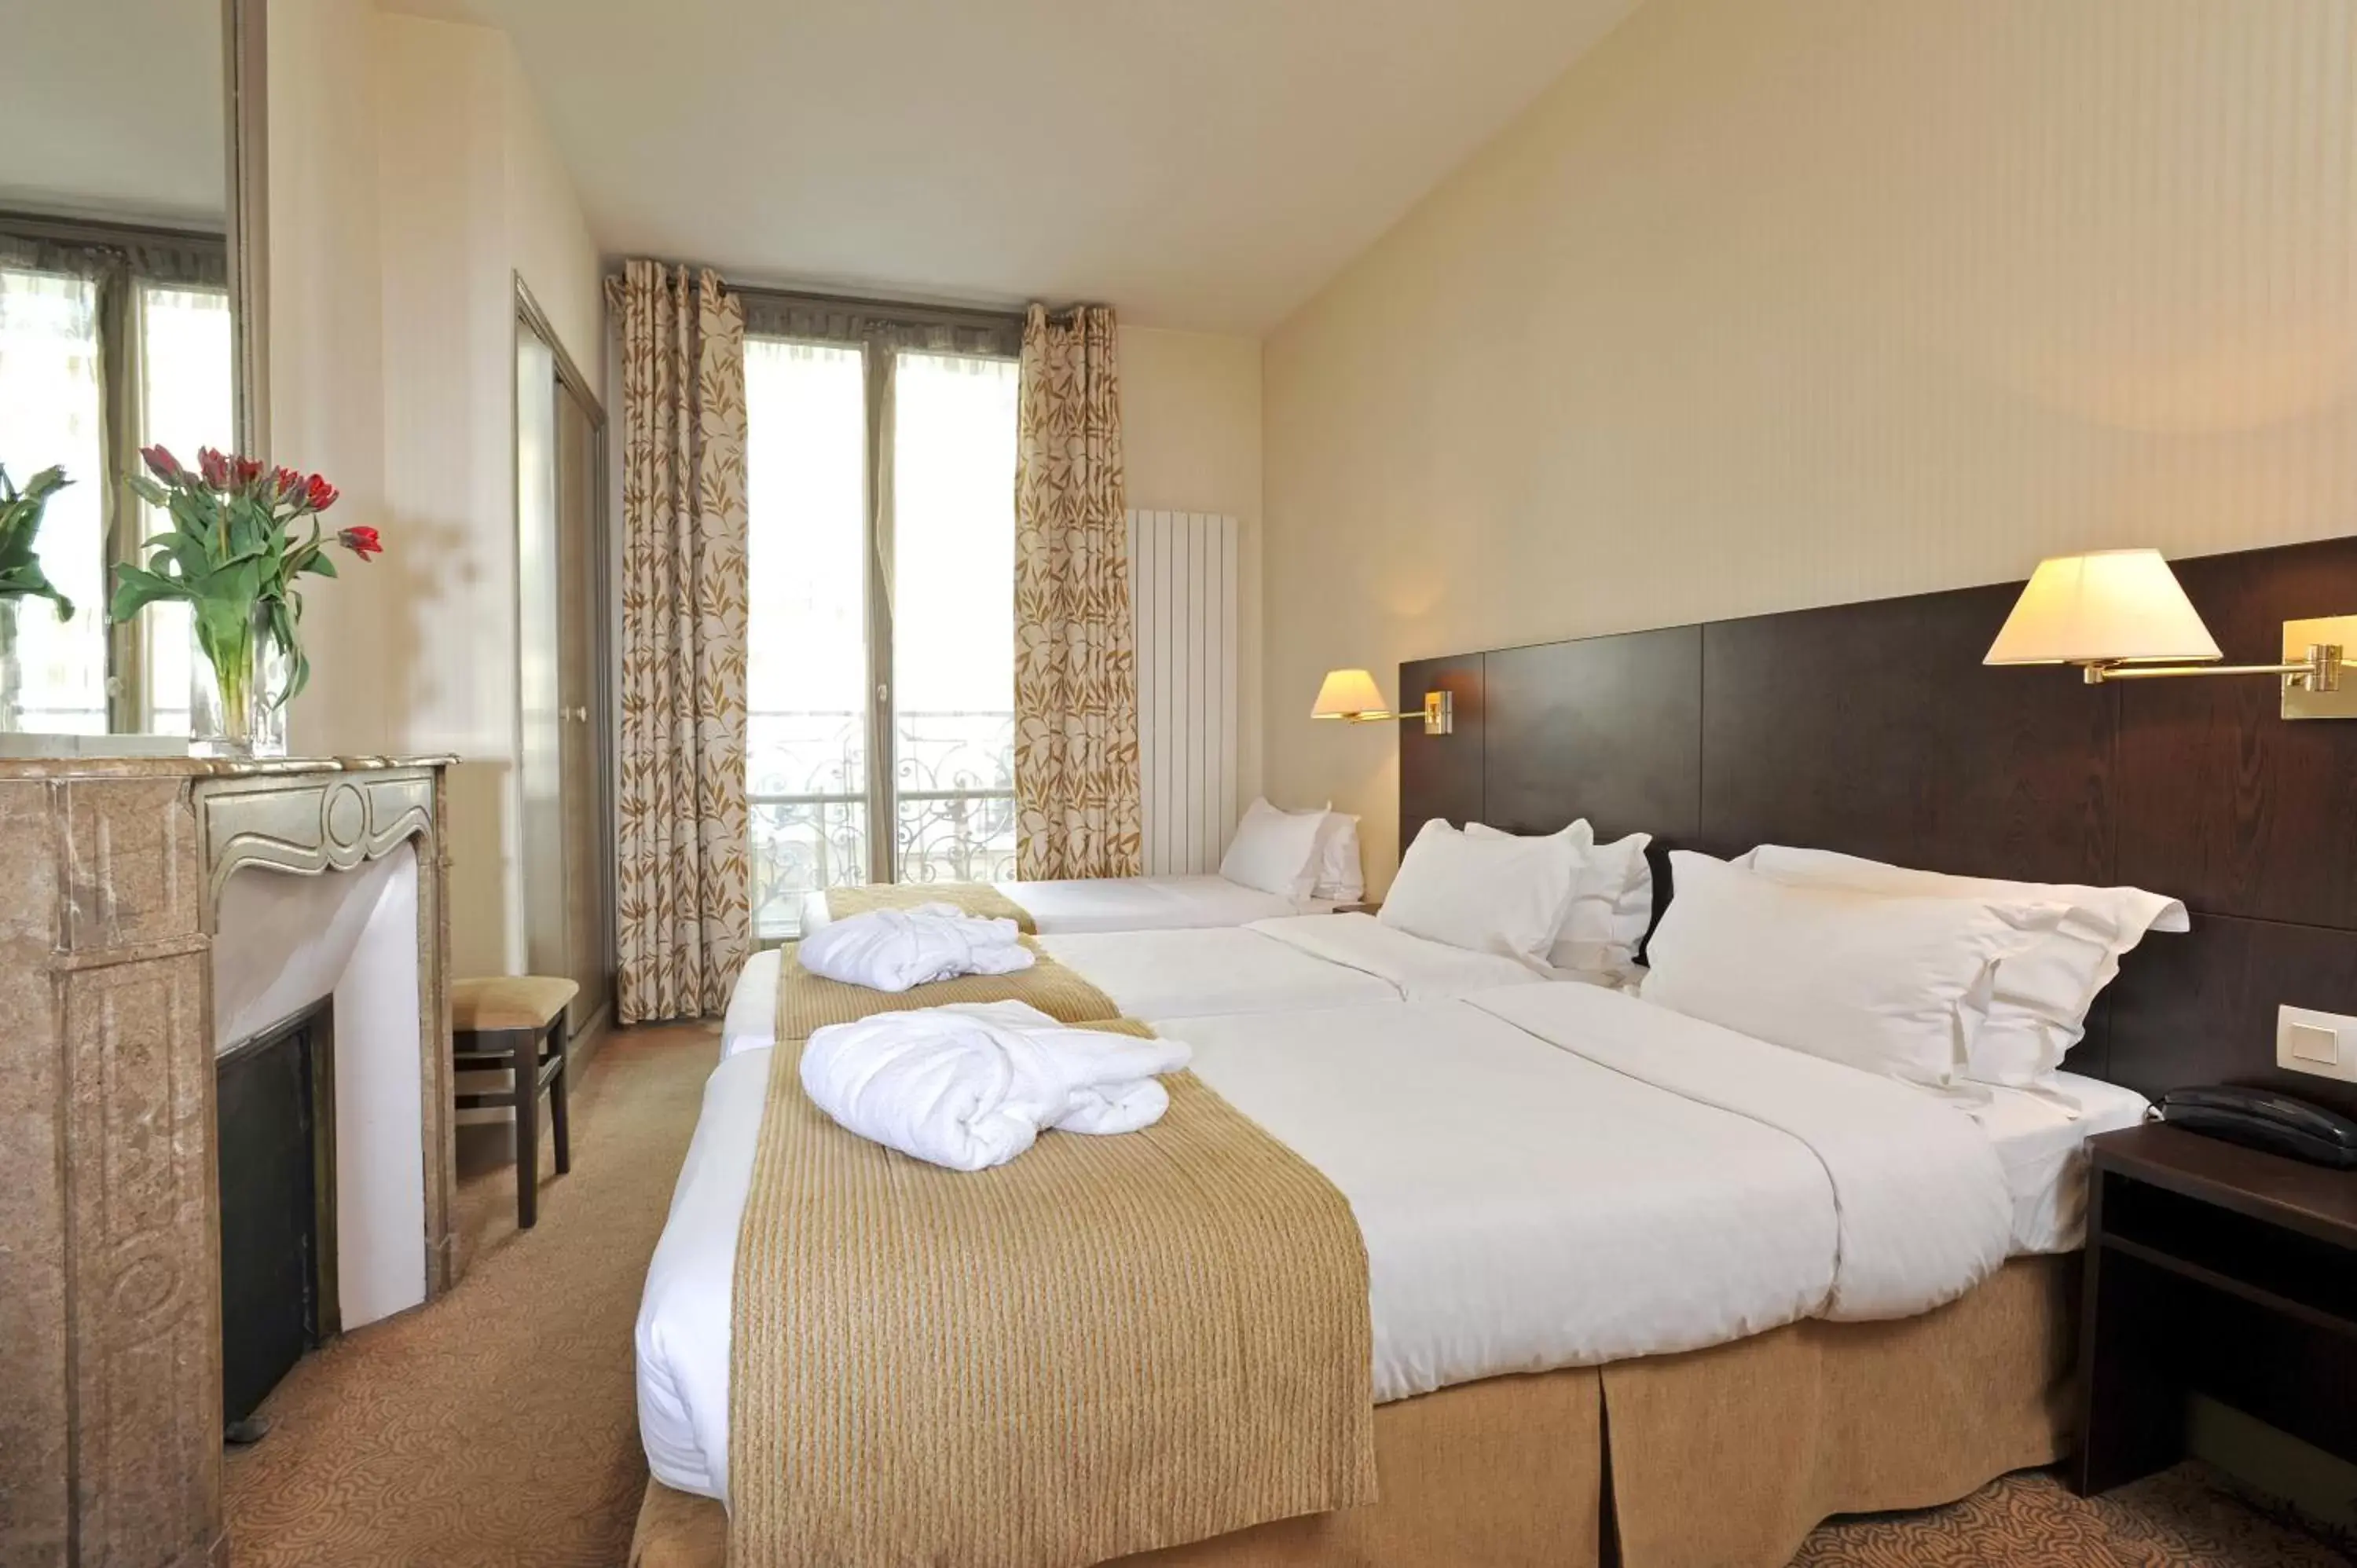 Bed in Hotel Vaneau Saint Germain